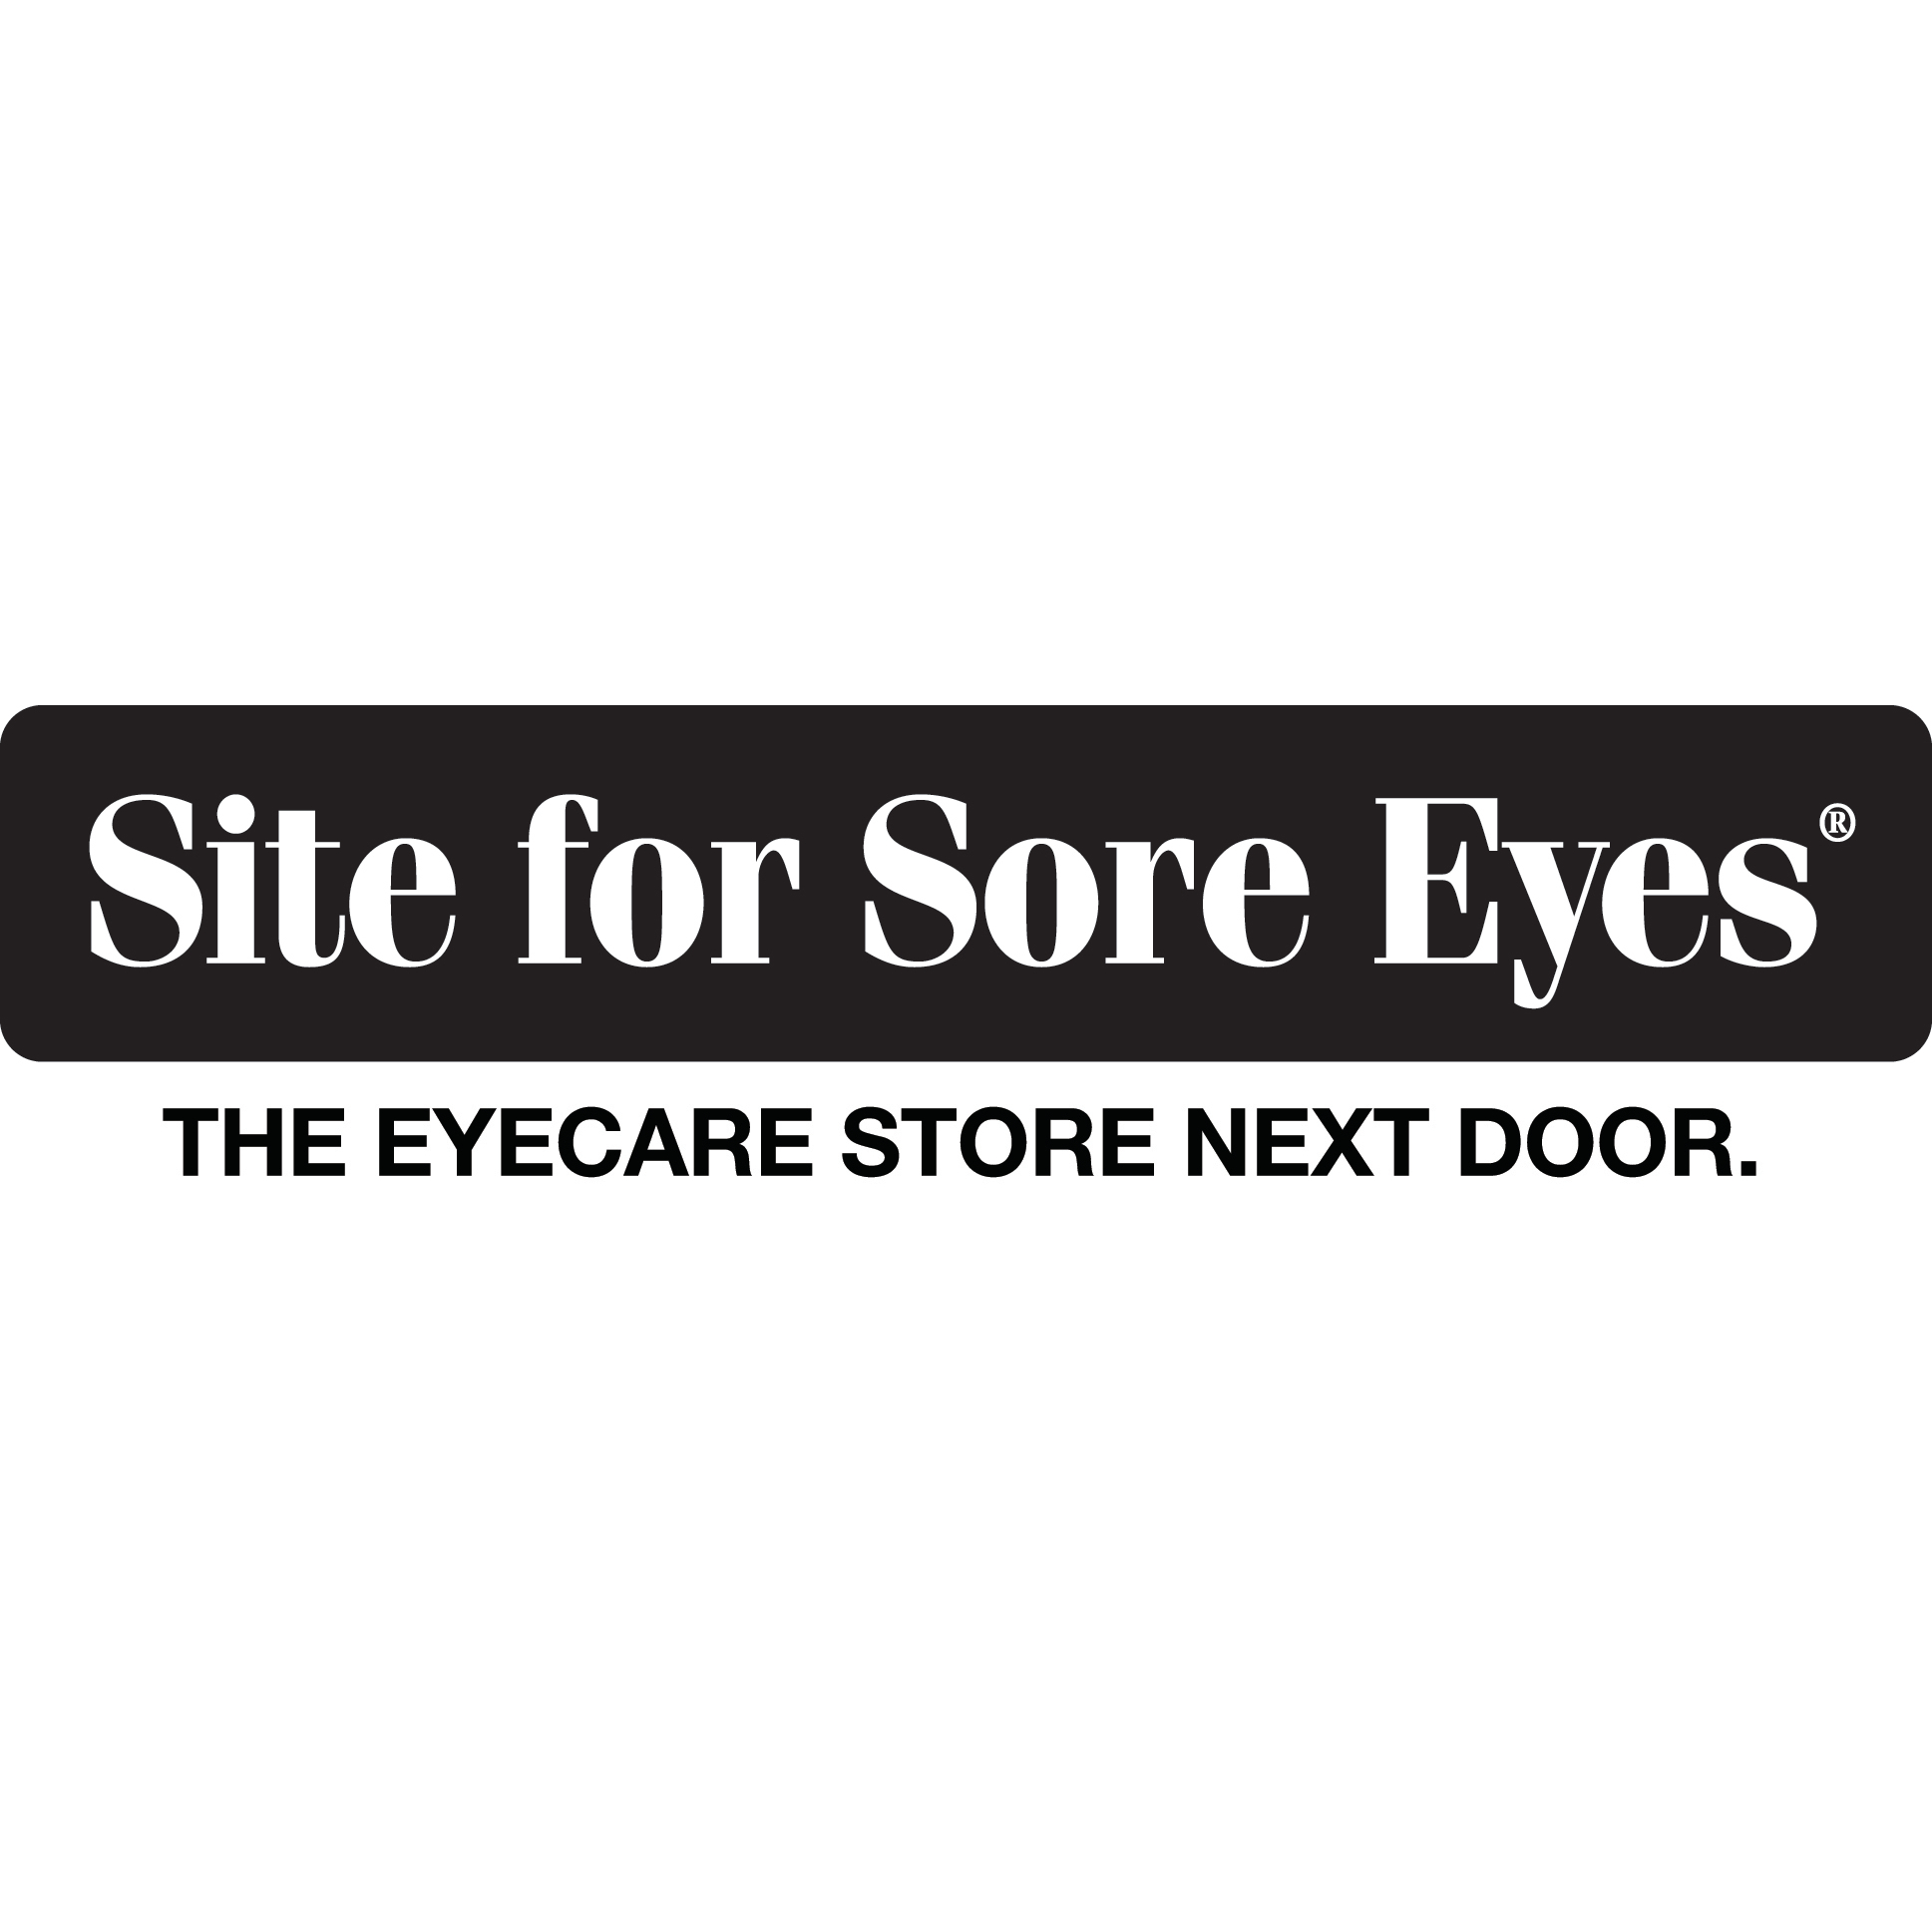 Site for Sore Eyes - Napa - Napa, CA 94558 - (707)224-7483 | ShowMeLocal.com